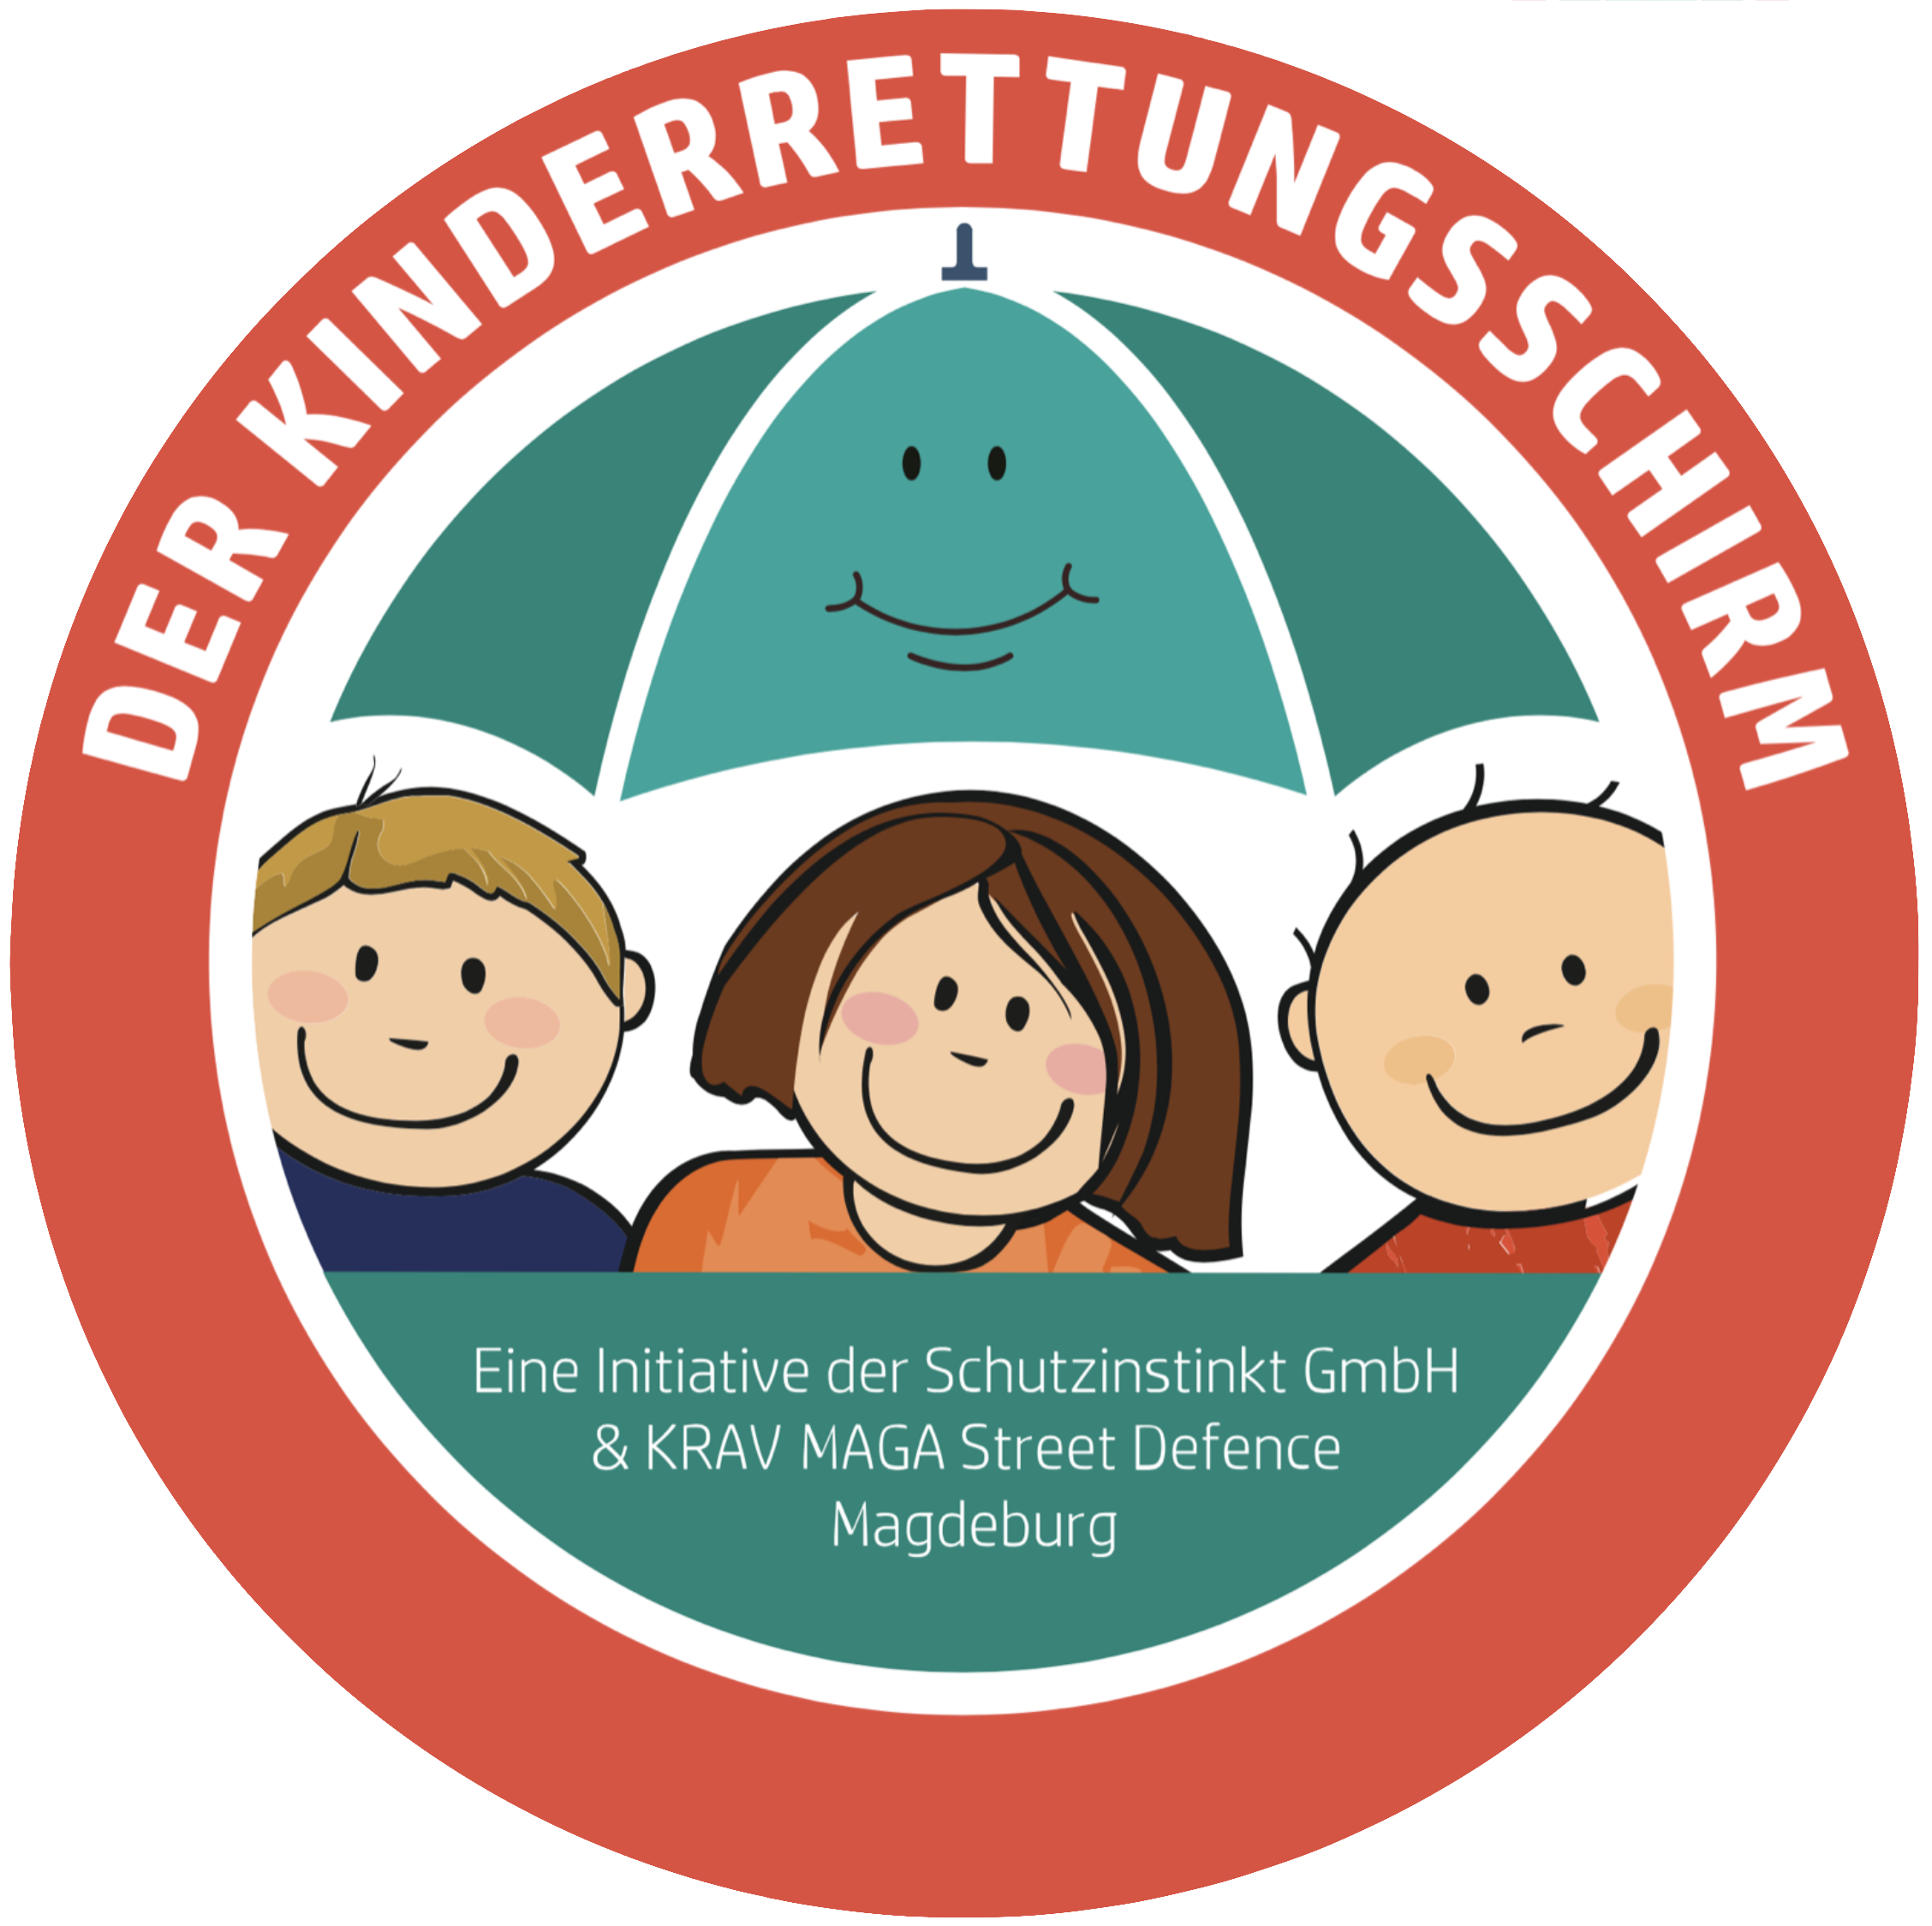 //kravmaga-magdeburg.de/wp-content/uploads/2021/04/Kinderrettunsschirm-Logo.png